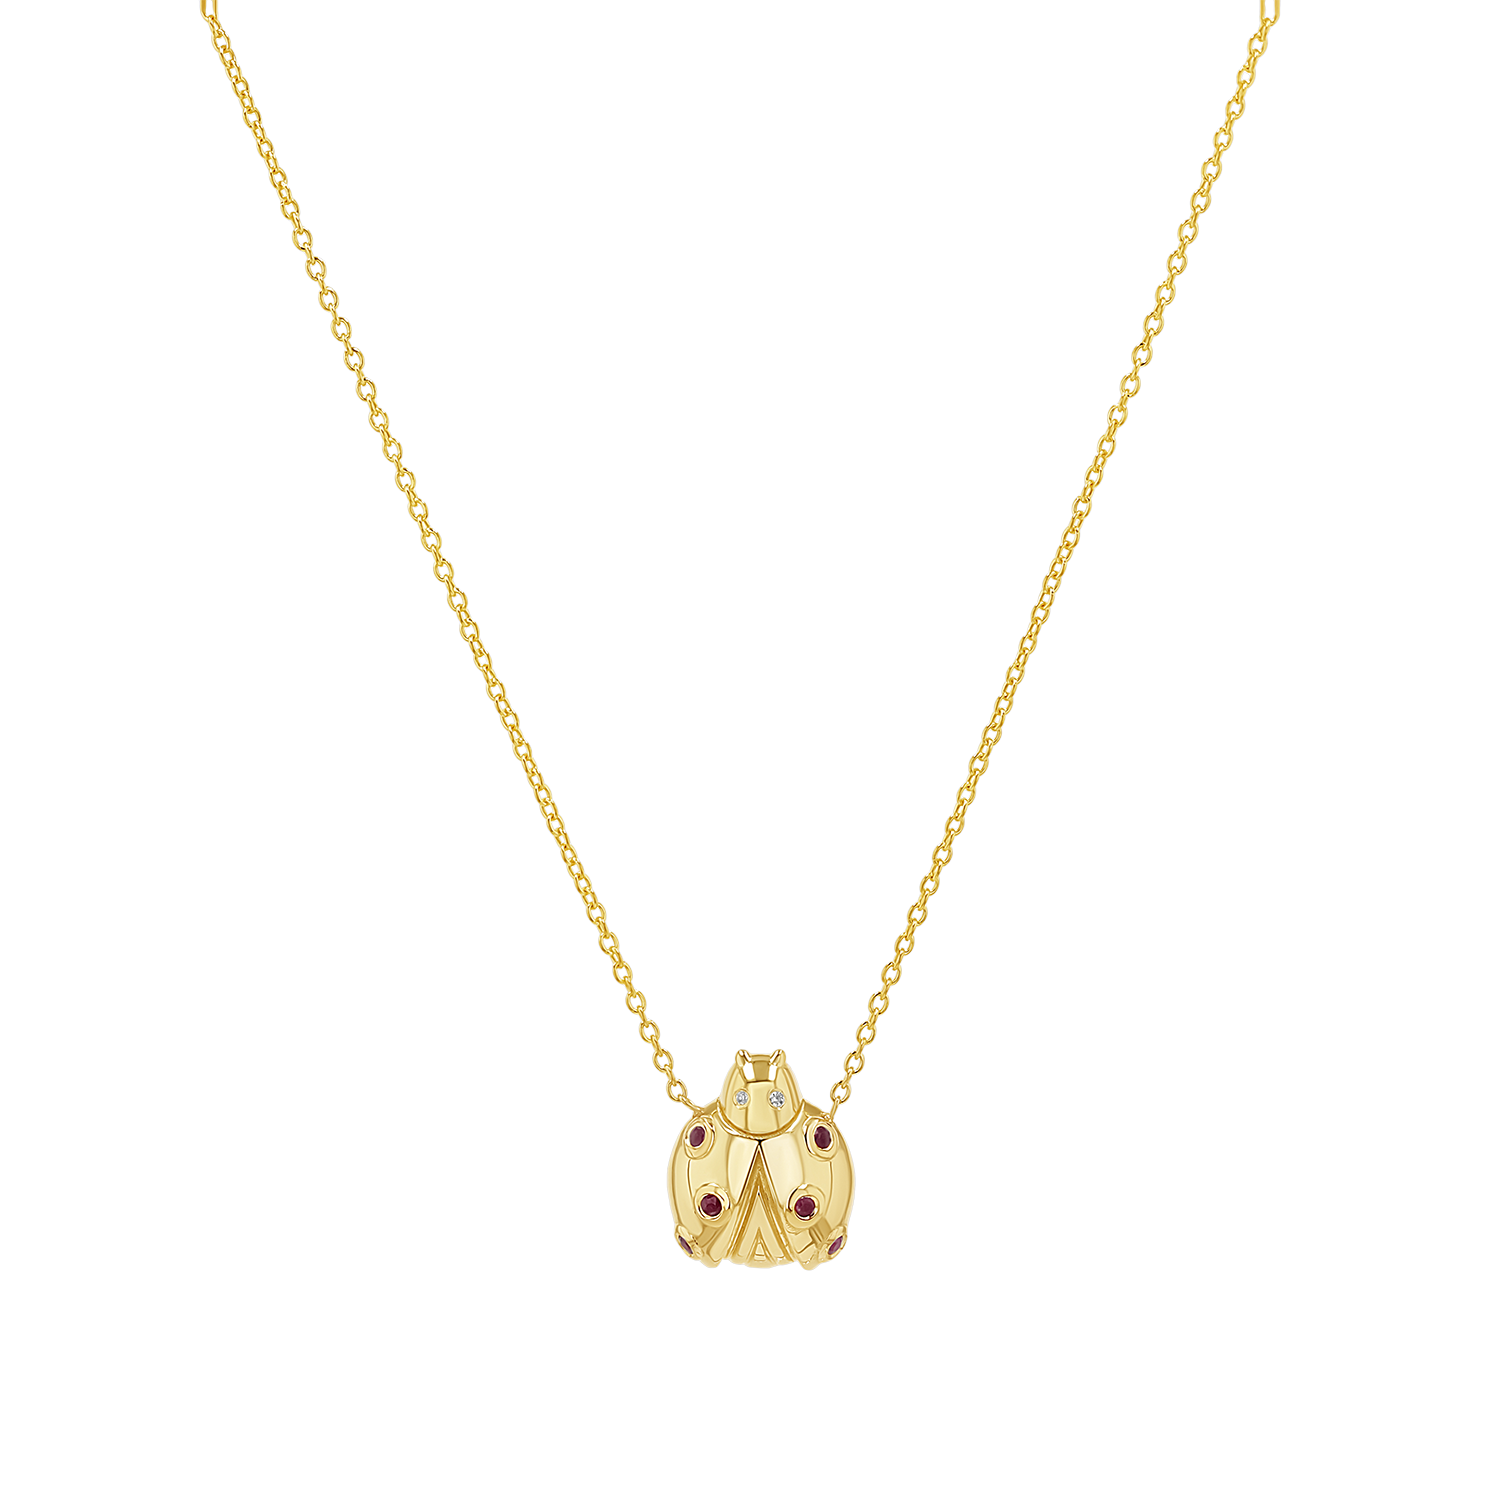 4 Elements Ladybug Charm Necklace – AnaKatarina Design